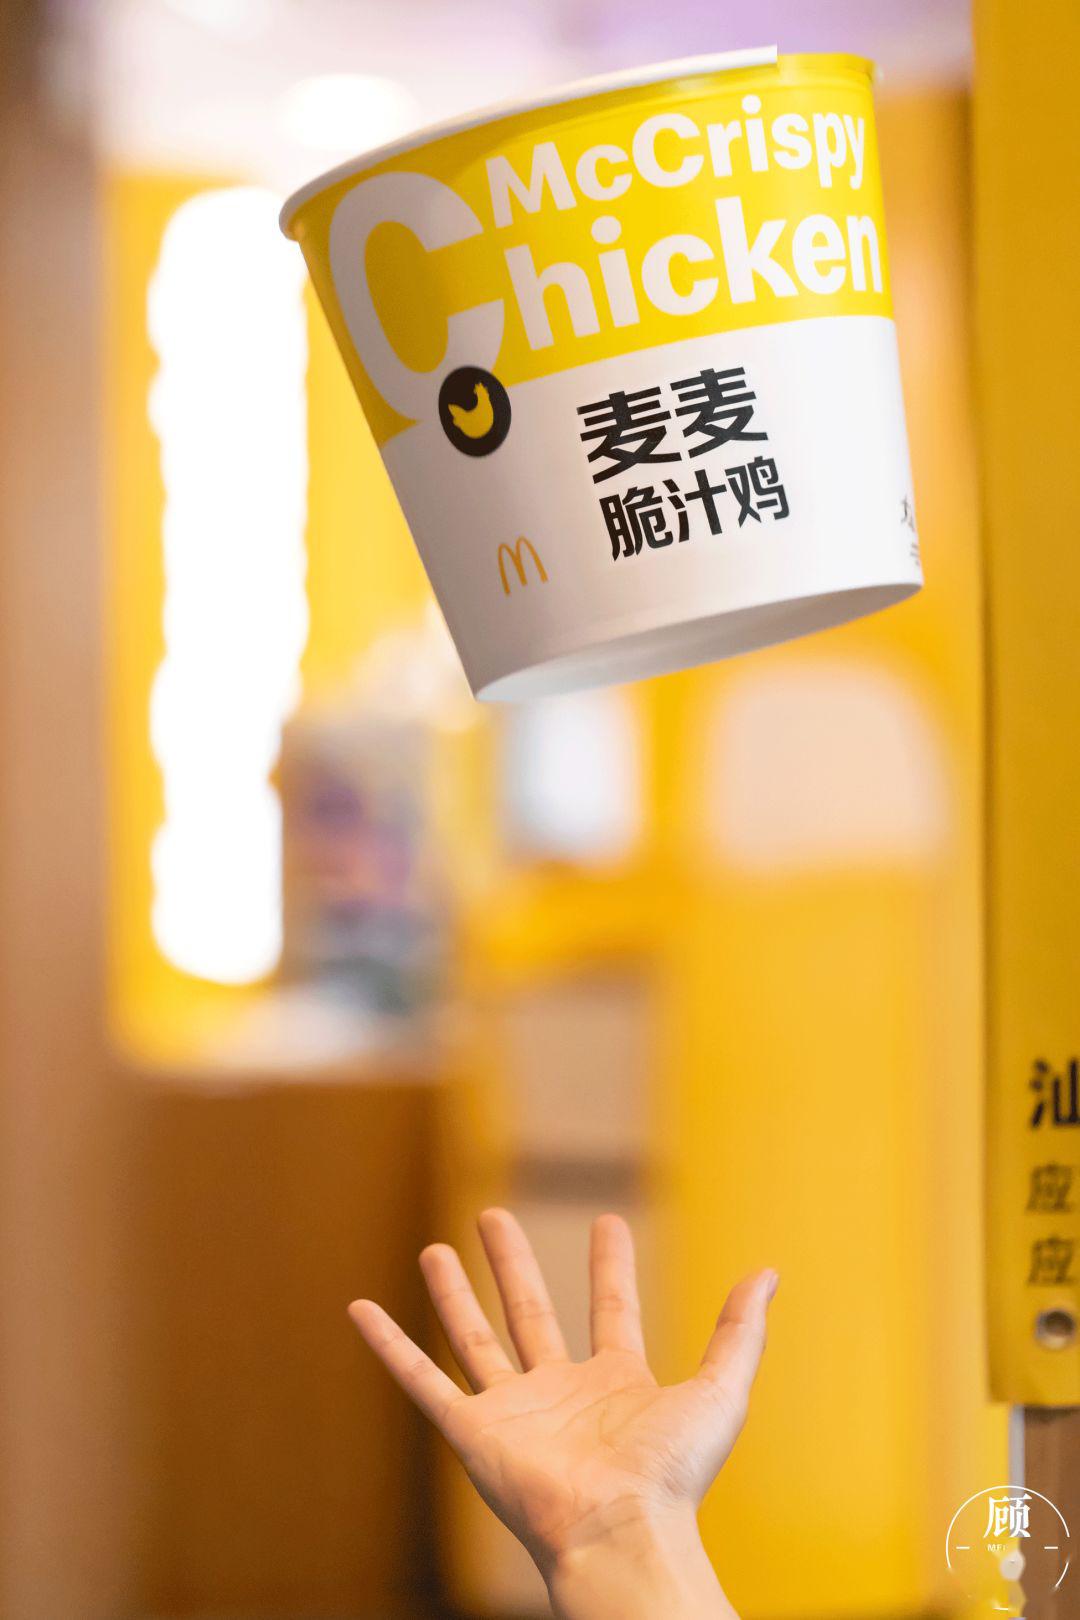 「 麦麦炸鸡桶,满足所有 」惊喜福利③成为"麦当劳小会员",任意消费送